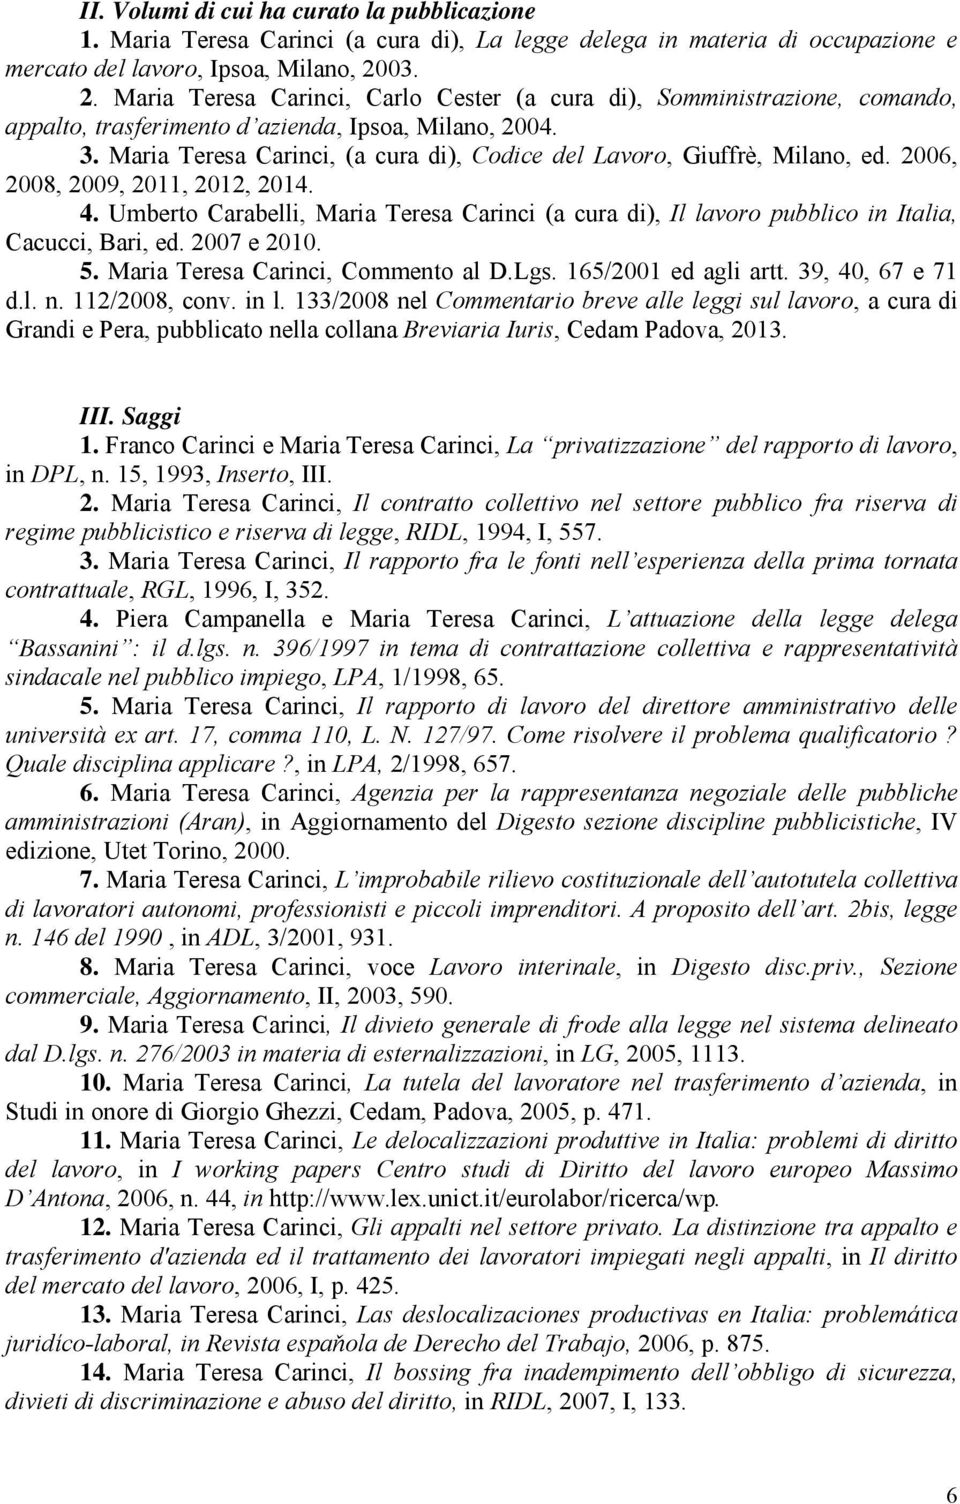 Maria Teresa Carinci, (a cura di), Codice del Lavoro, Giuffrè, Milano, ed. 2006, 2008, 2009, 2011, 2012, 2014. 4.